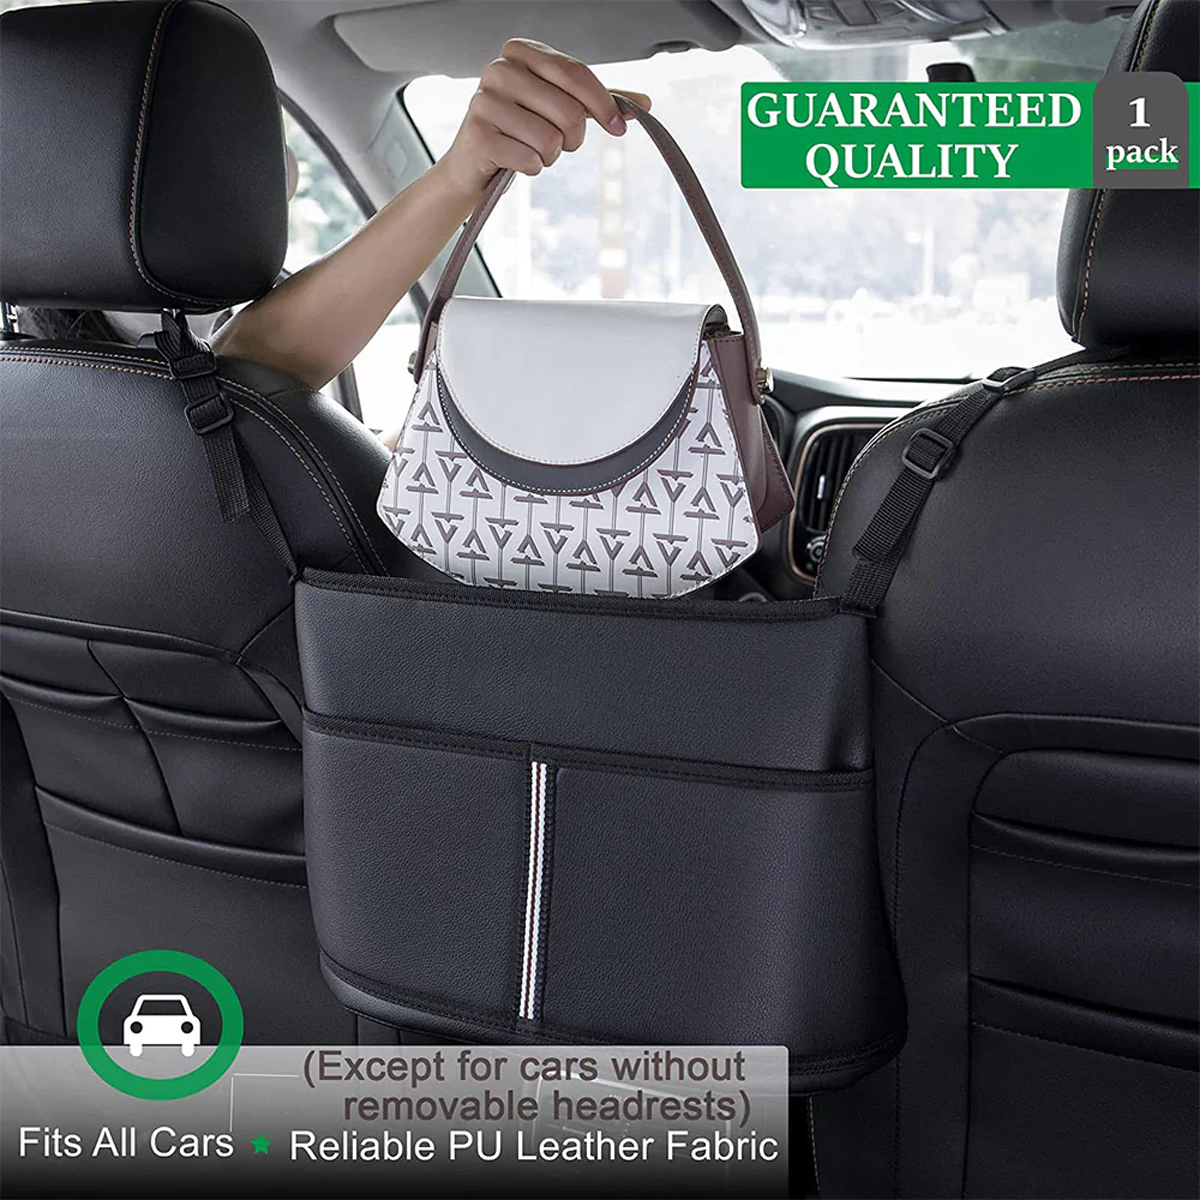 Car Purse Holder for Car Handbag Holder Between Seats Premium PU Leather, Custom Fit For Car, Hanging Car Purse Storage Pocket Back Seat Pet Barrier DLMB223